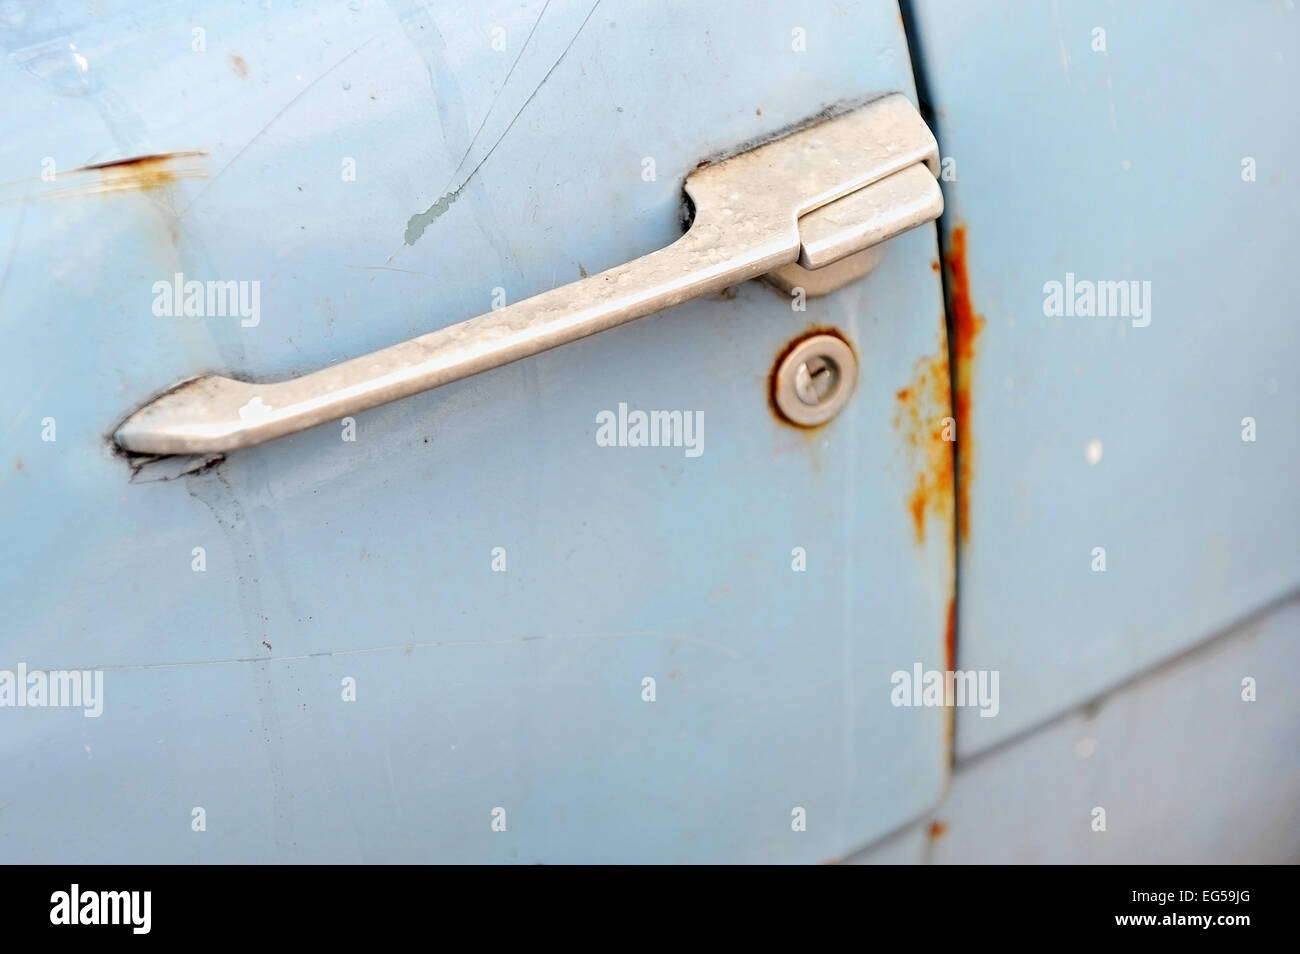 Dettaglio delle riprese con un arrugginito maniglia della porta da una vecchia auto Foto Stock